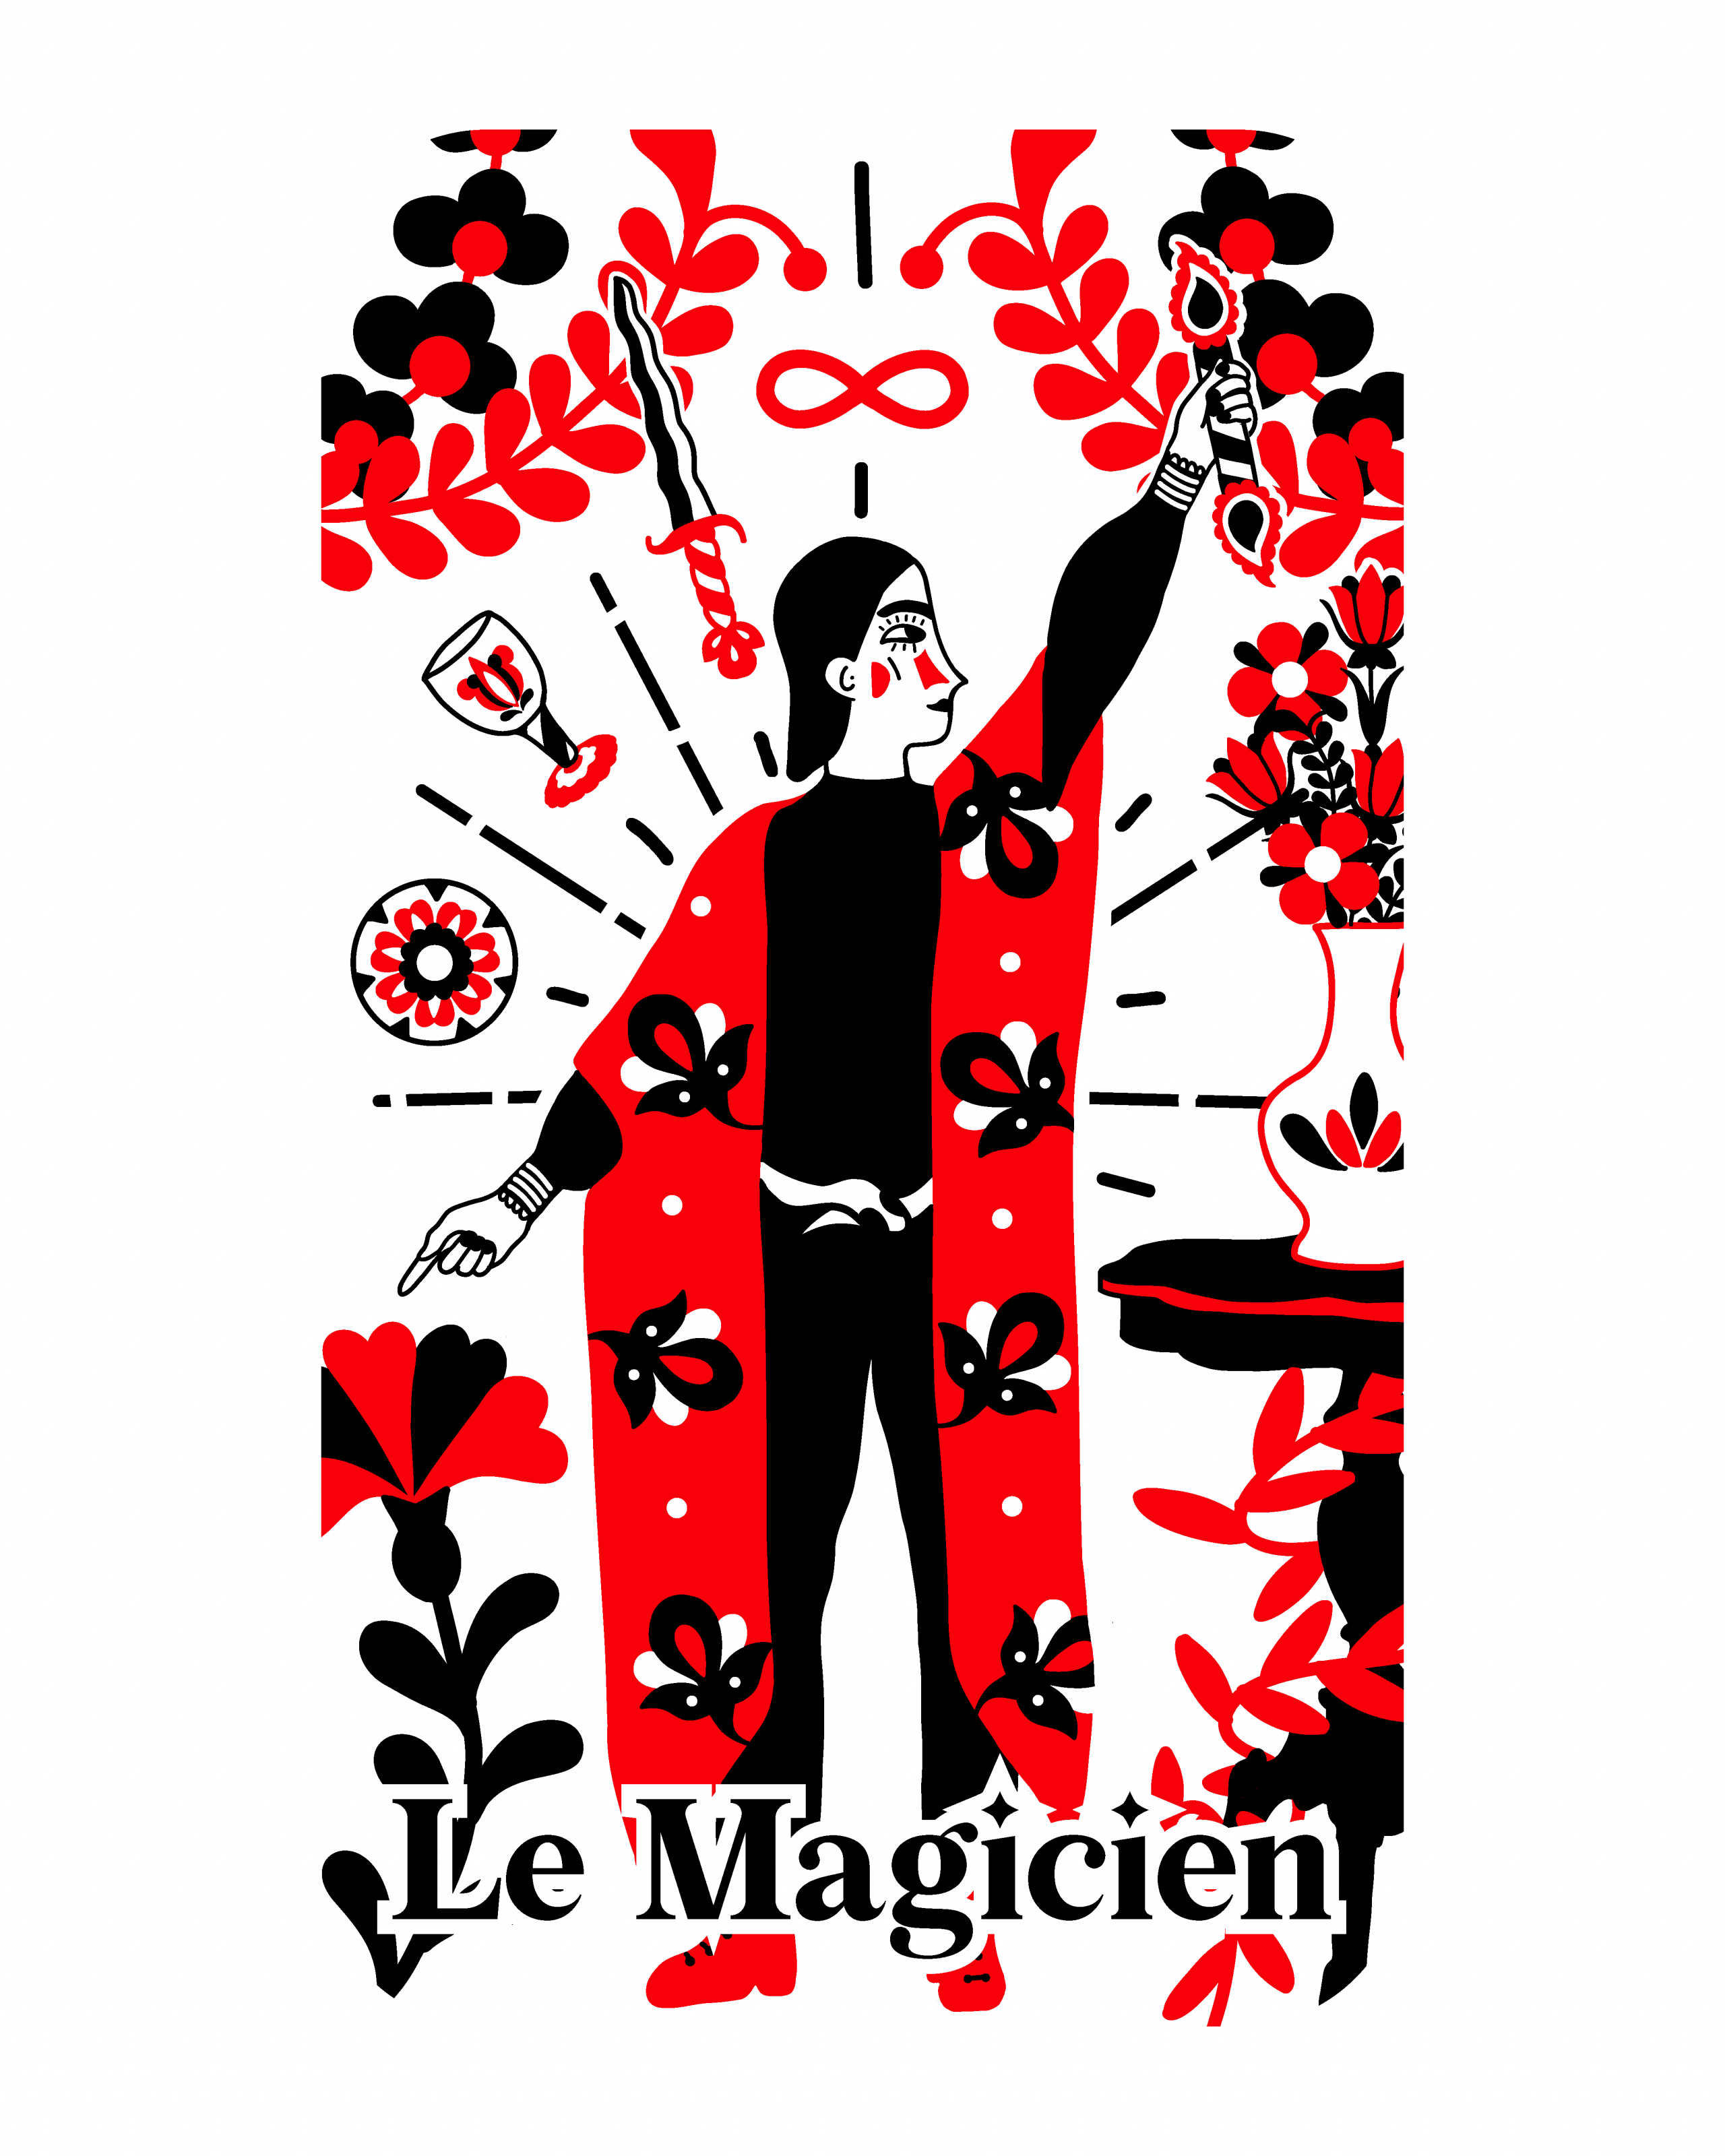 I. Le Magicien